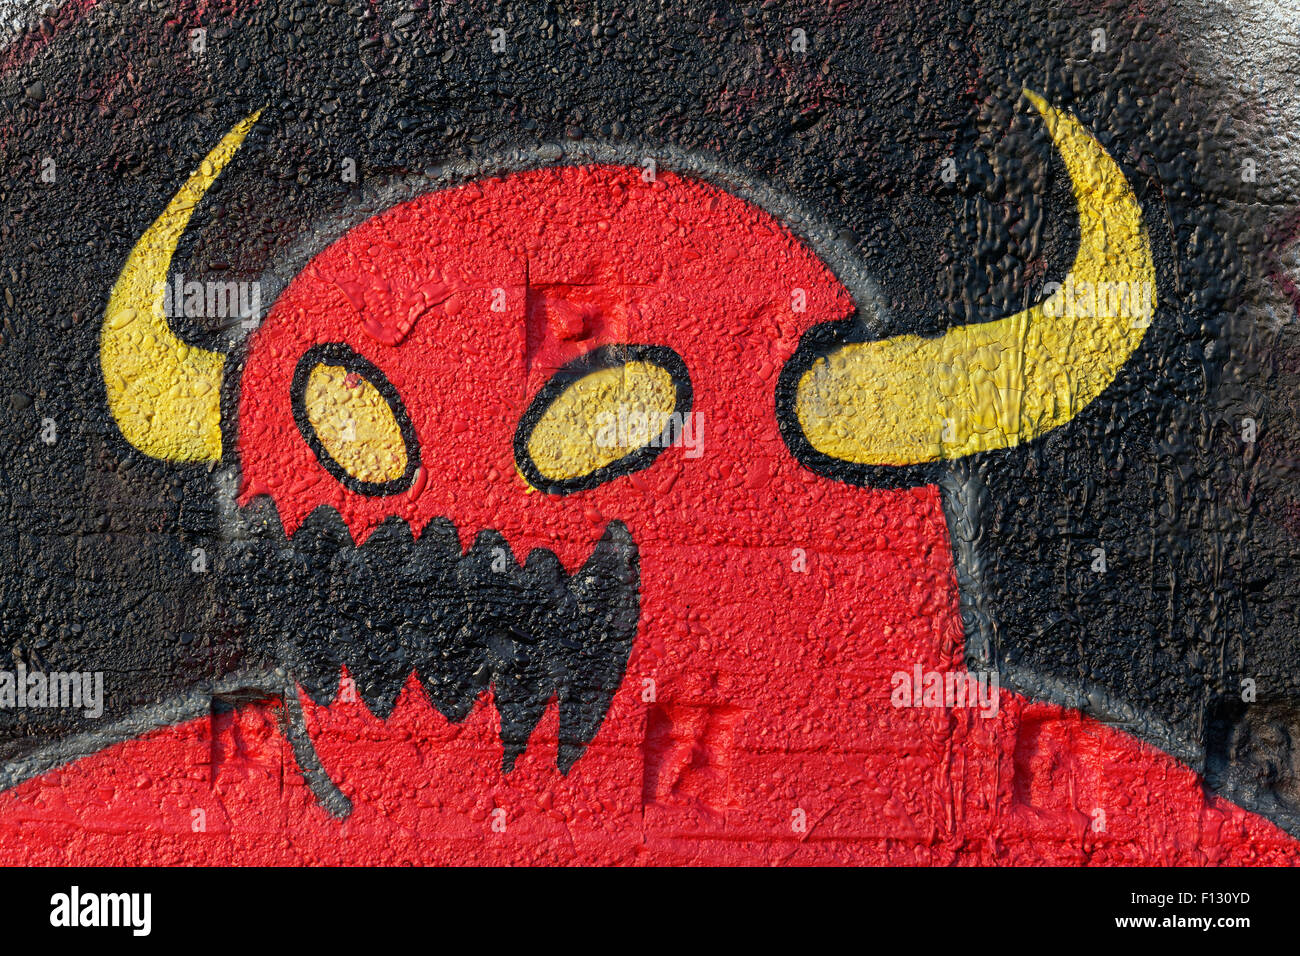 Monster rojo con cuernos amarillos, fantasía figura, graffiti, street art, Duisburg, Renania del Norte-Westfalia, Alemania Foto de stock